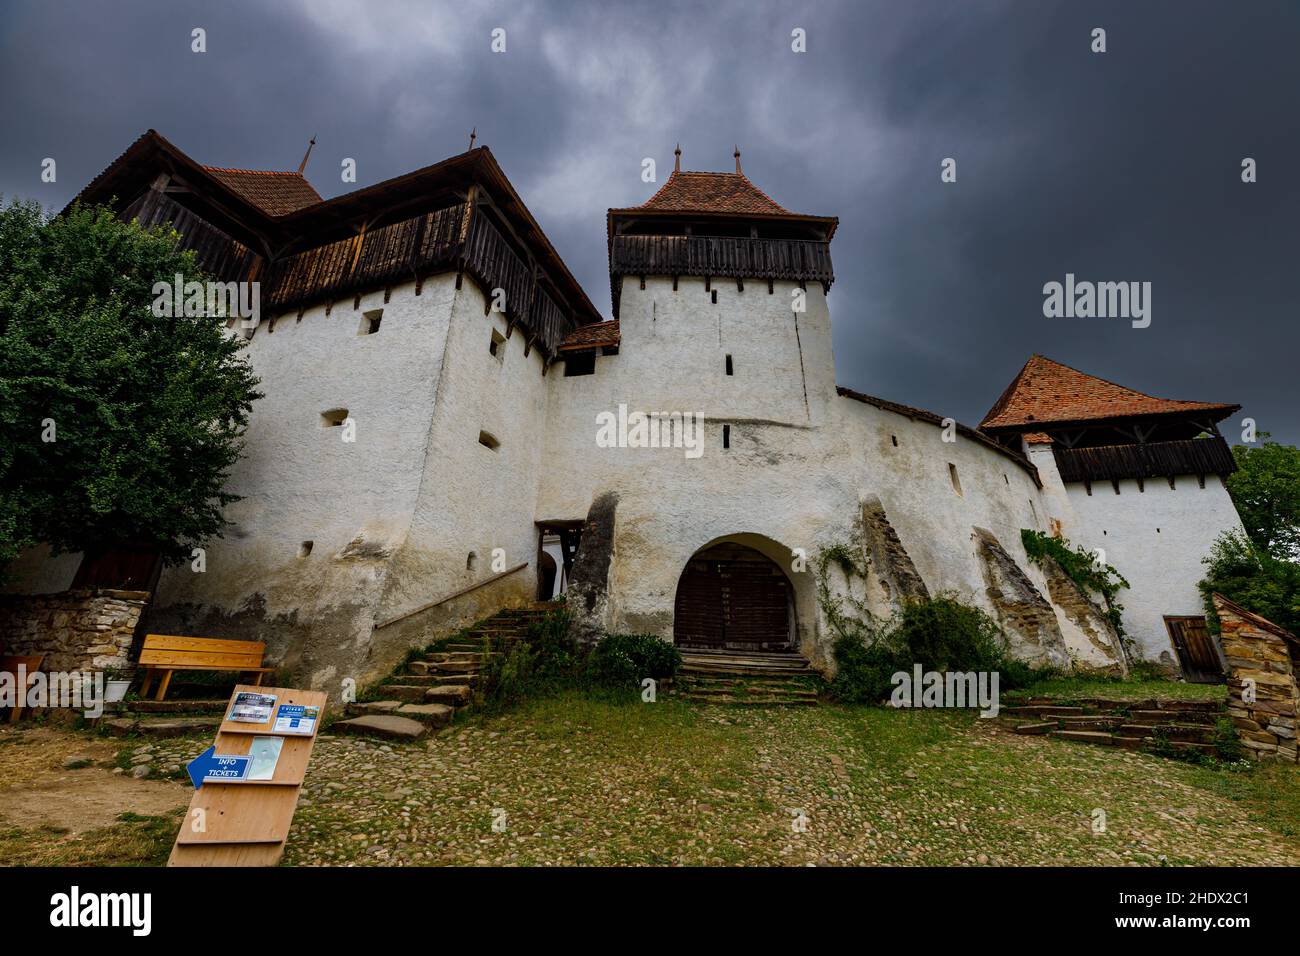 La chiesa fortificata di Visrci in Romania Foto Stock